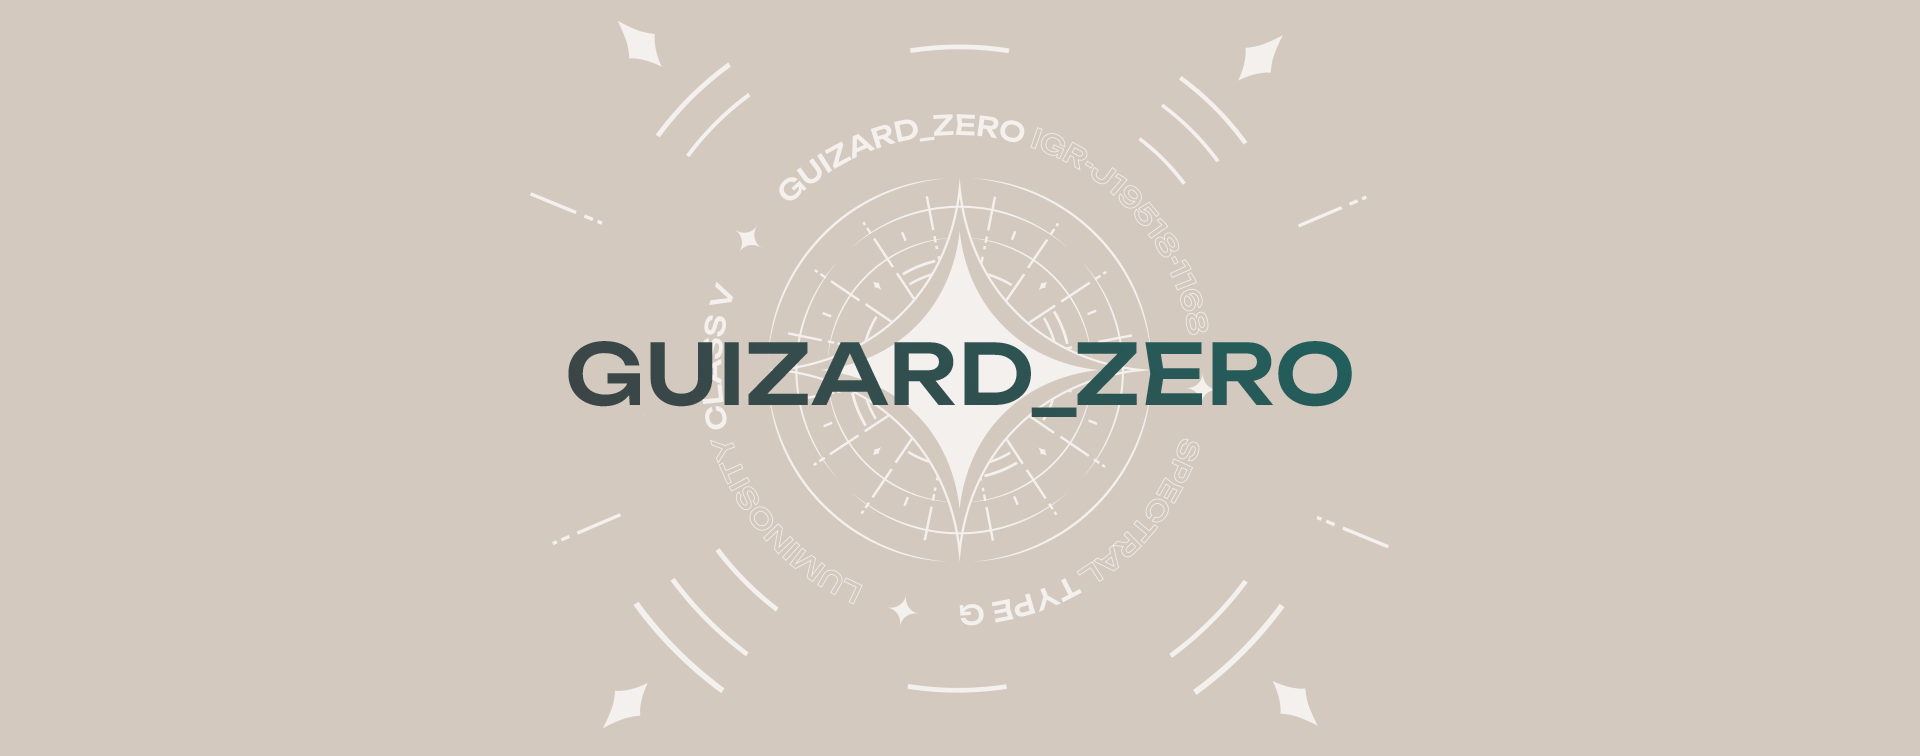 Guizard_Zero